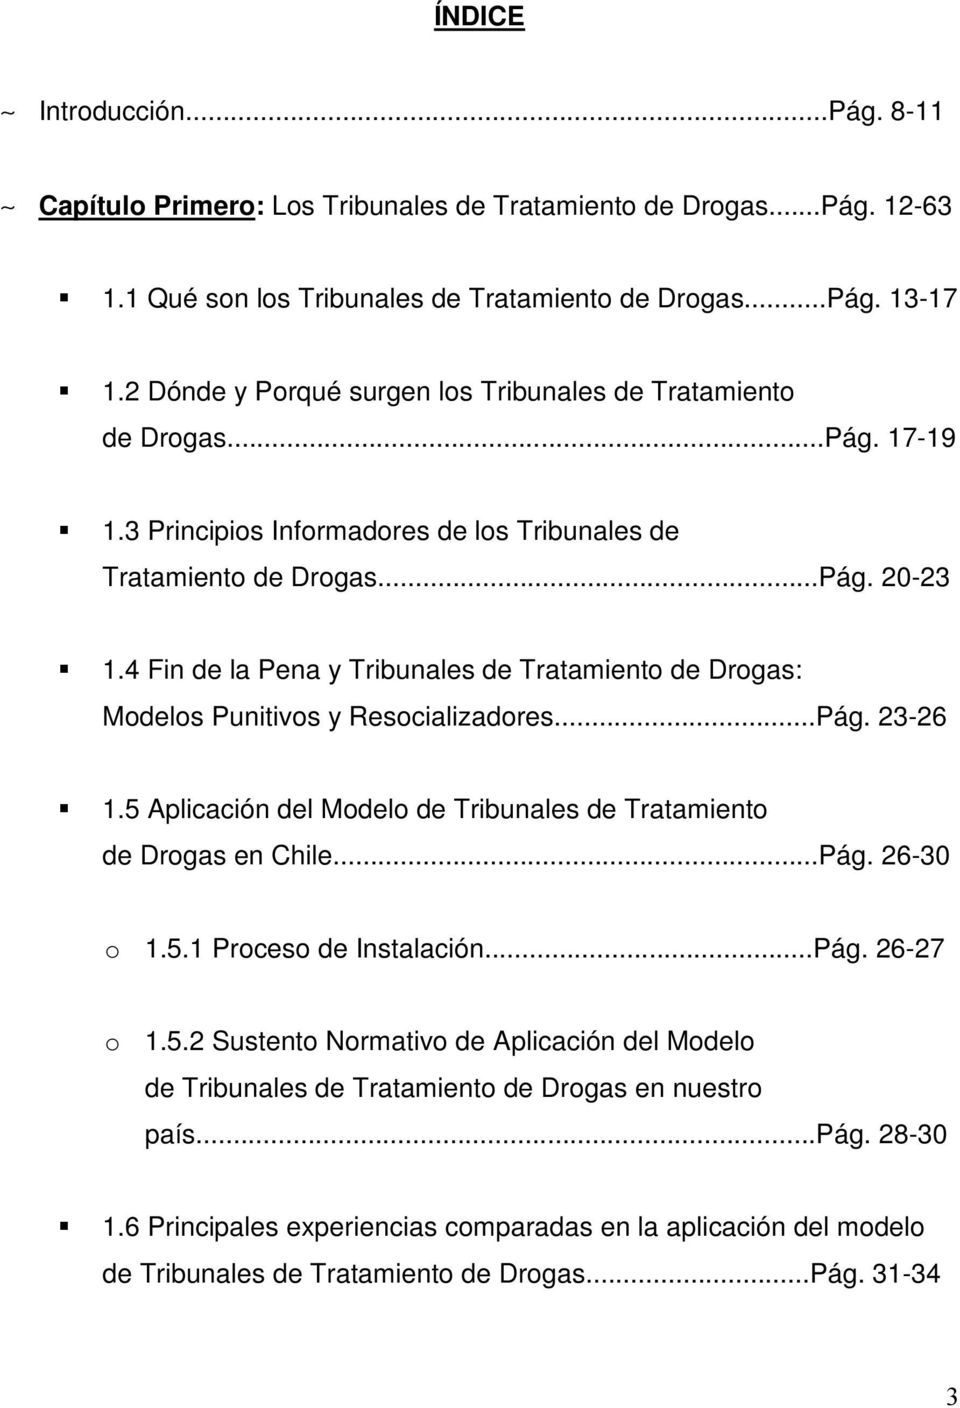 4 Fin de la Pena y Tribunales de Tratamiento de Drogas: Modelos Punitivos y Resocializadores...Pág. 23-26 1.5 Aplicación del Modelo de Tribunales de Tratamiento de Drogas en Chile...Pág. 26-30 o 1.5.1 Proceso de Instalación.